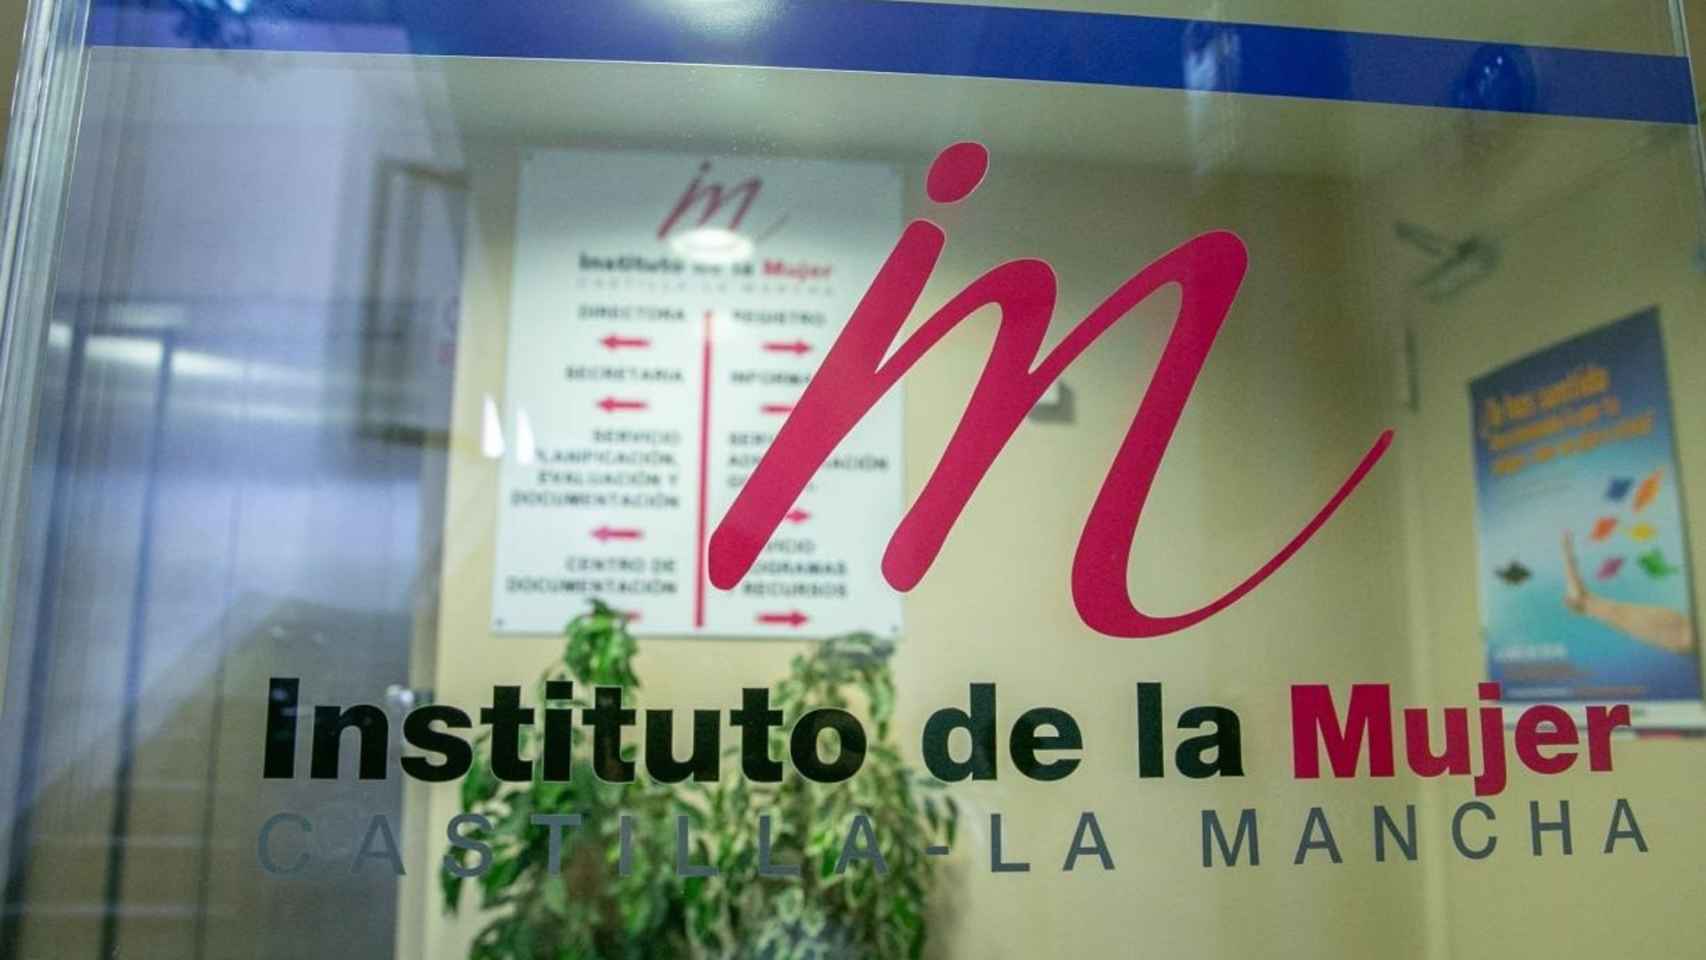 Instituto de la Mujer de Castilla-La Mancha